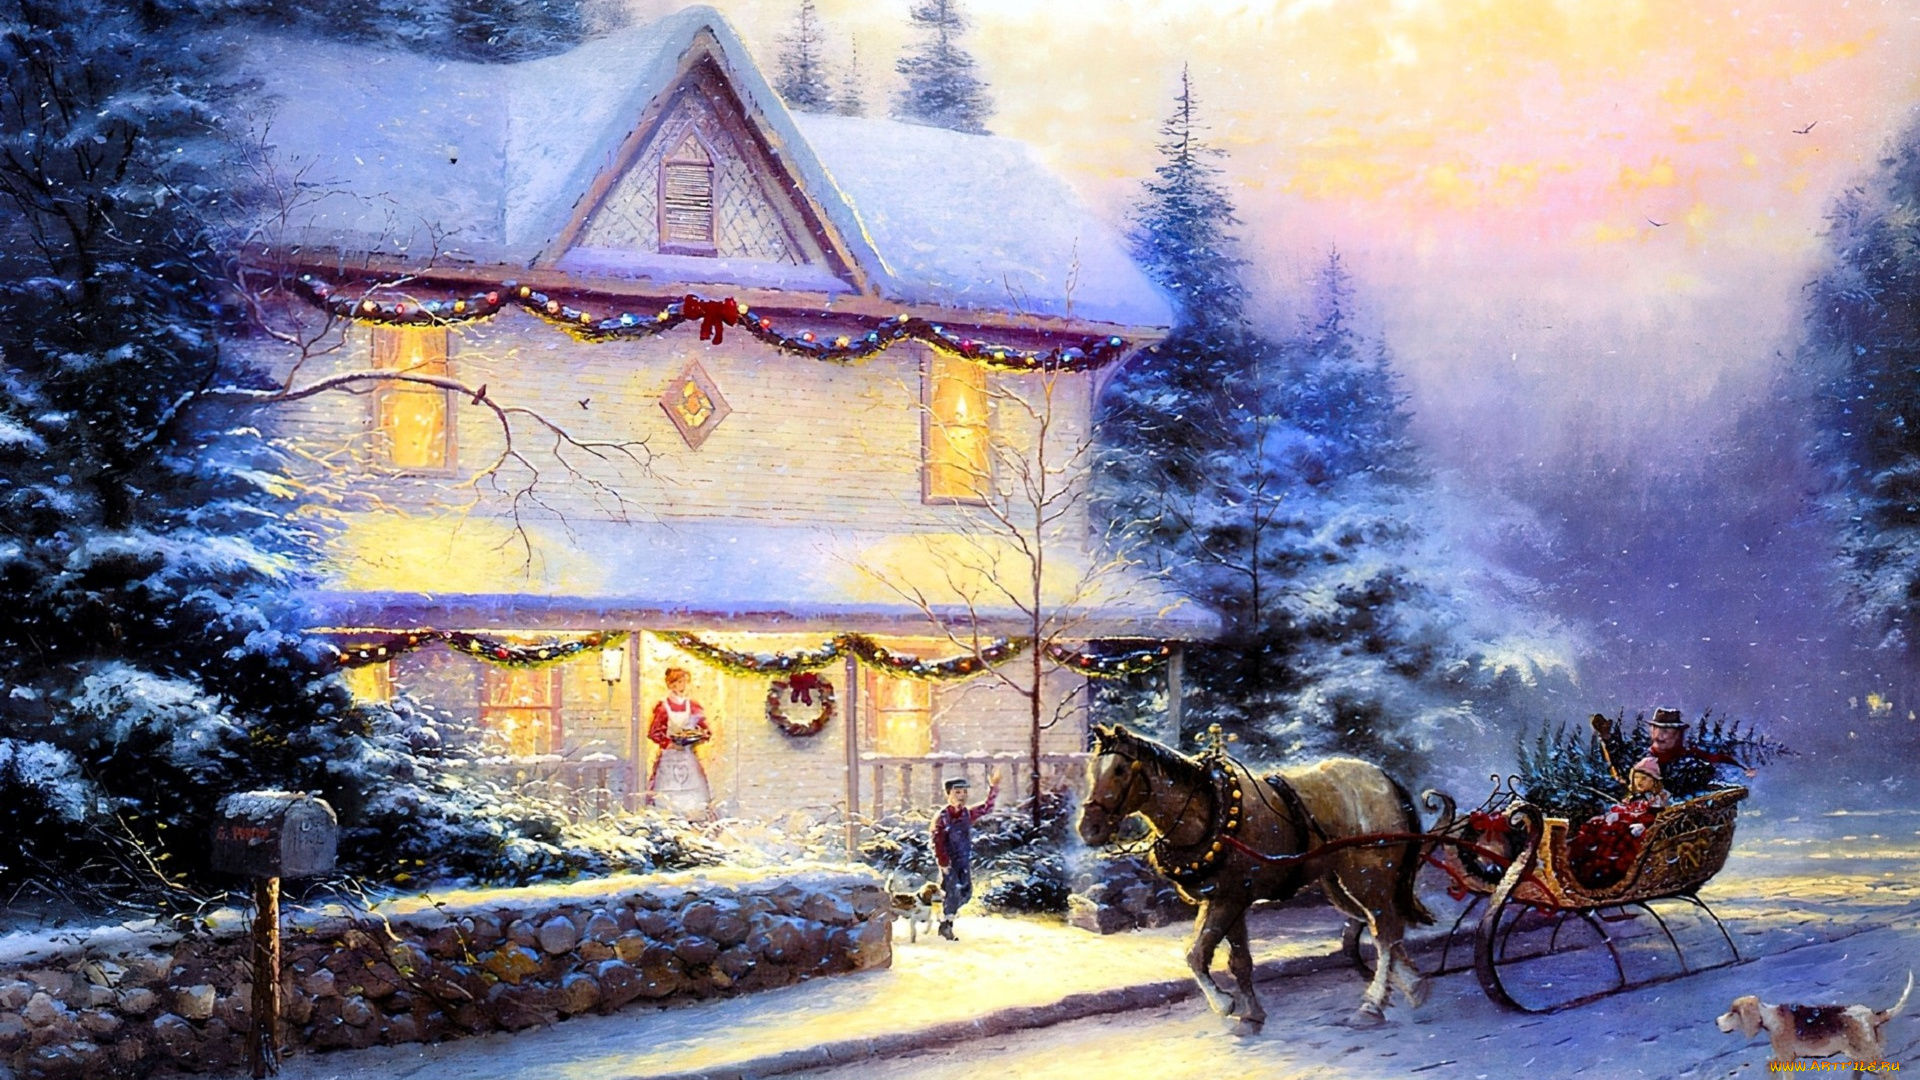 рисованное, thomas, kinkade, дом, снег, деревья, люди, сани, лошадь